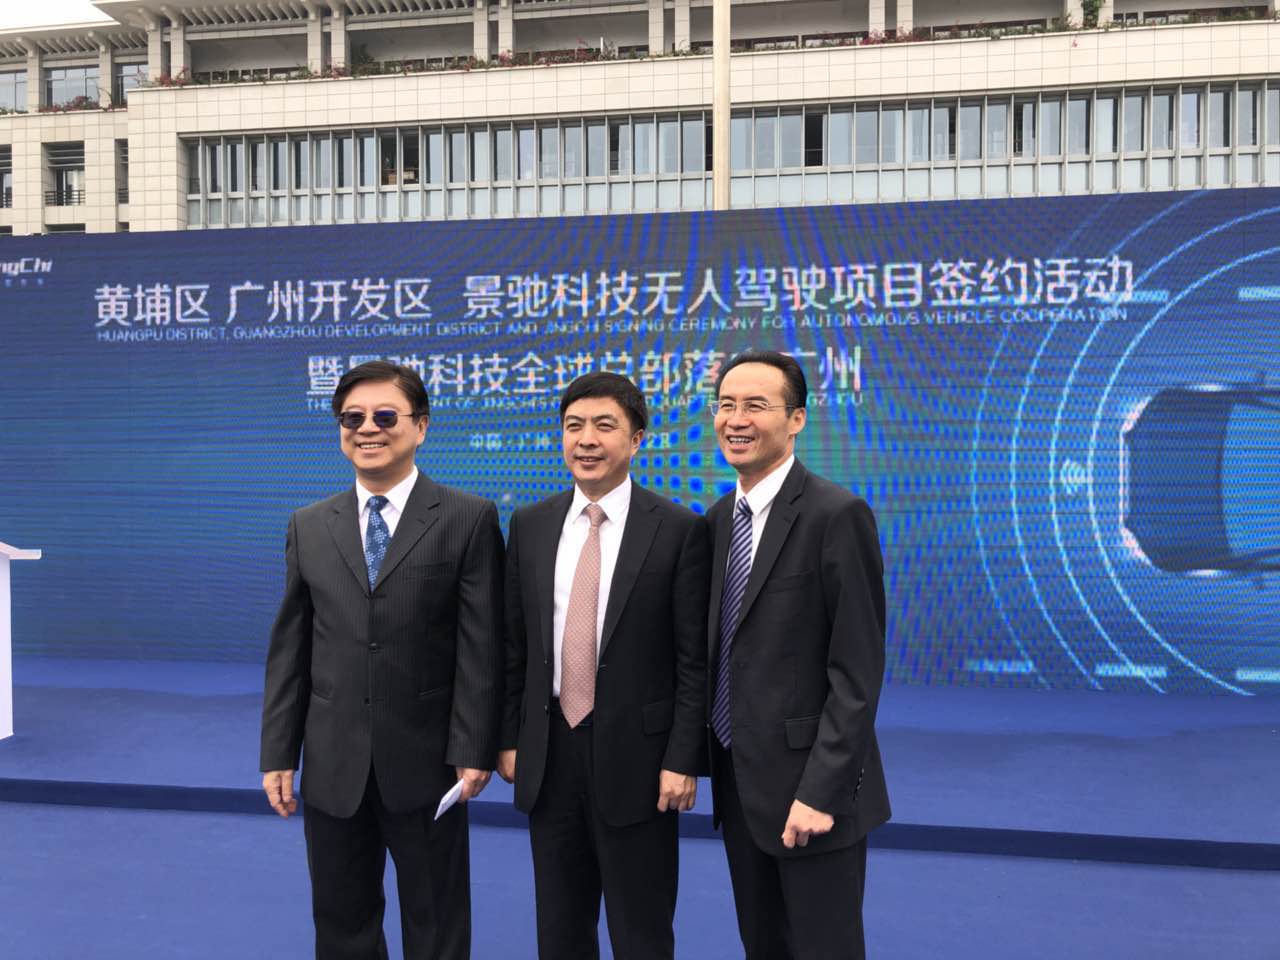 景驰全球总部宣布落户广州 明年量产500-1000辆无人驾驶车